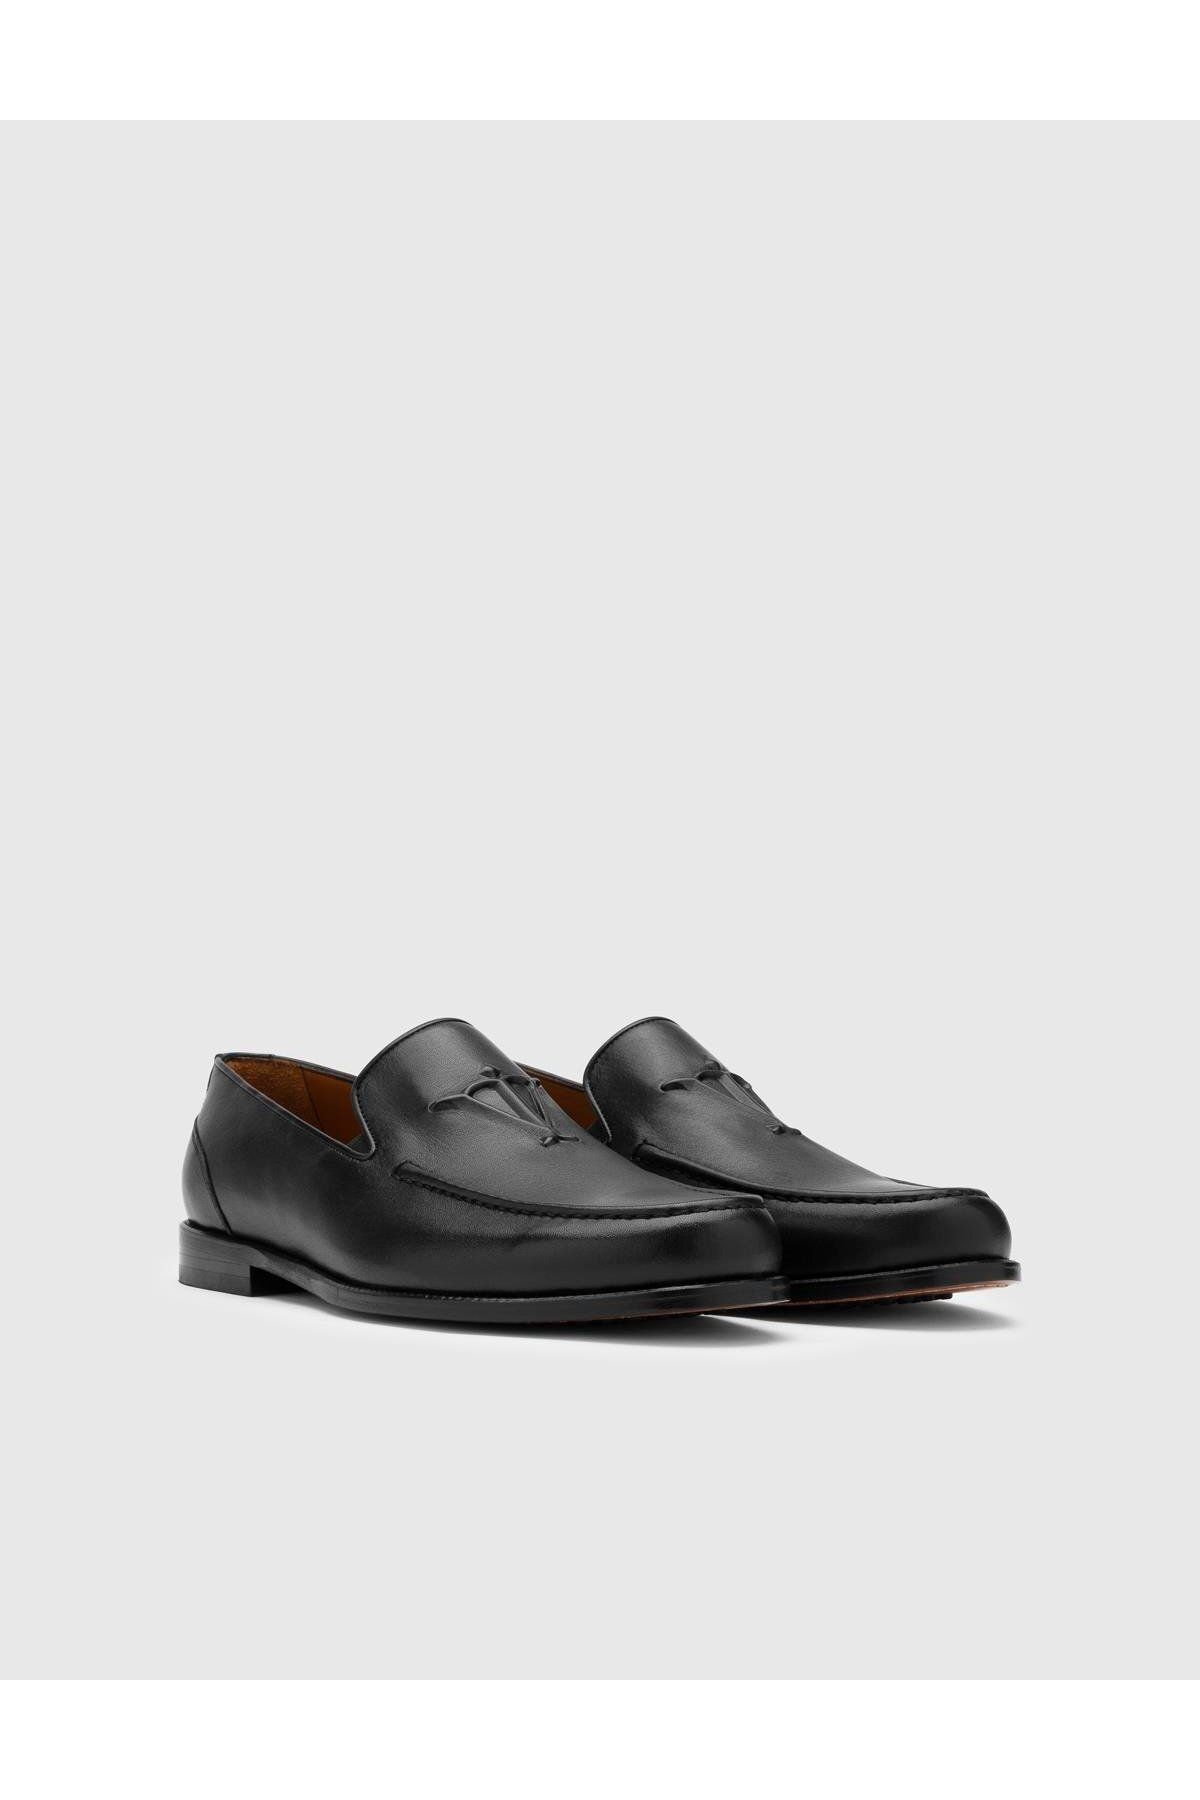 İlvi Walker Hakiki Deri Erkek Siyah Klasik Ayakkabı